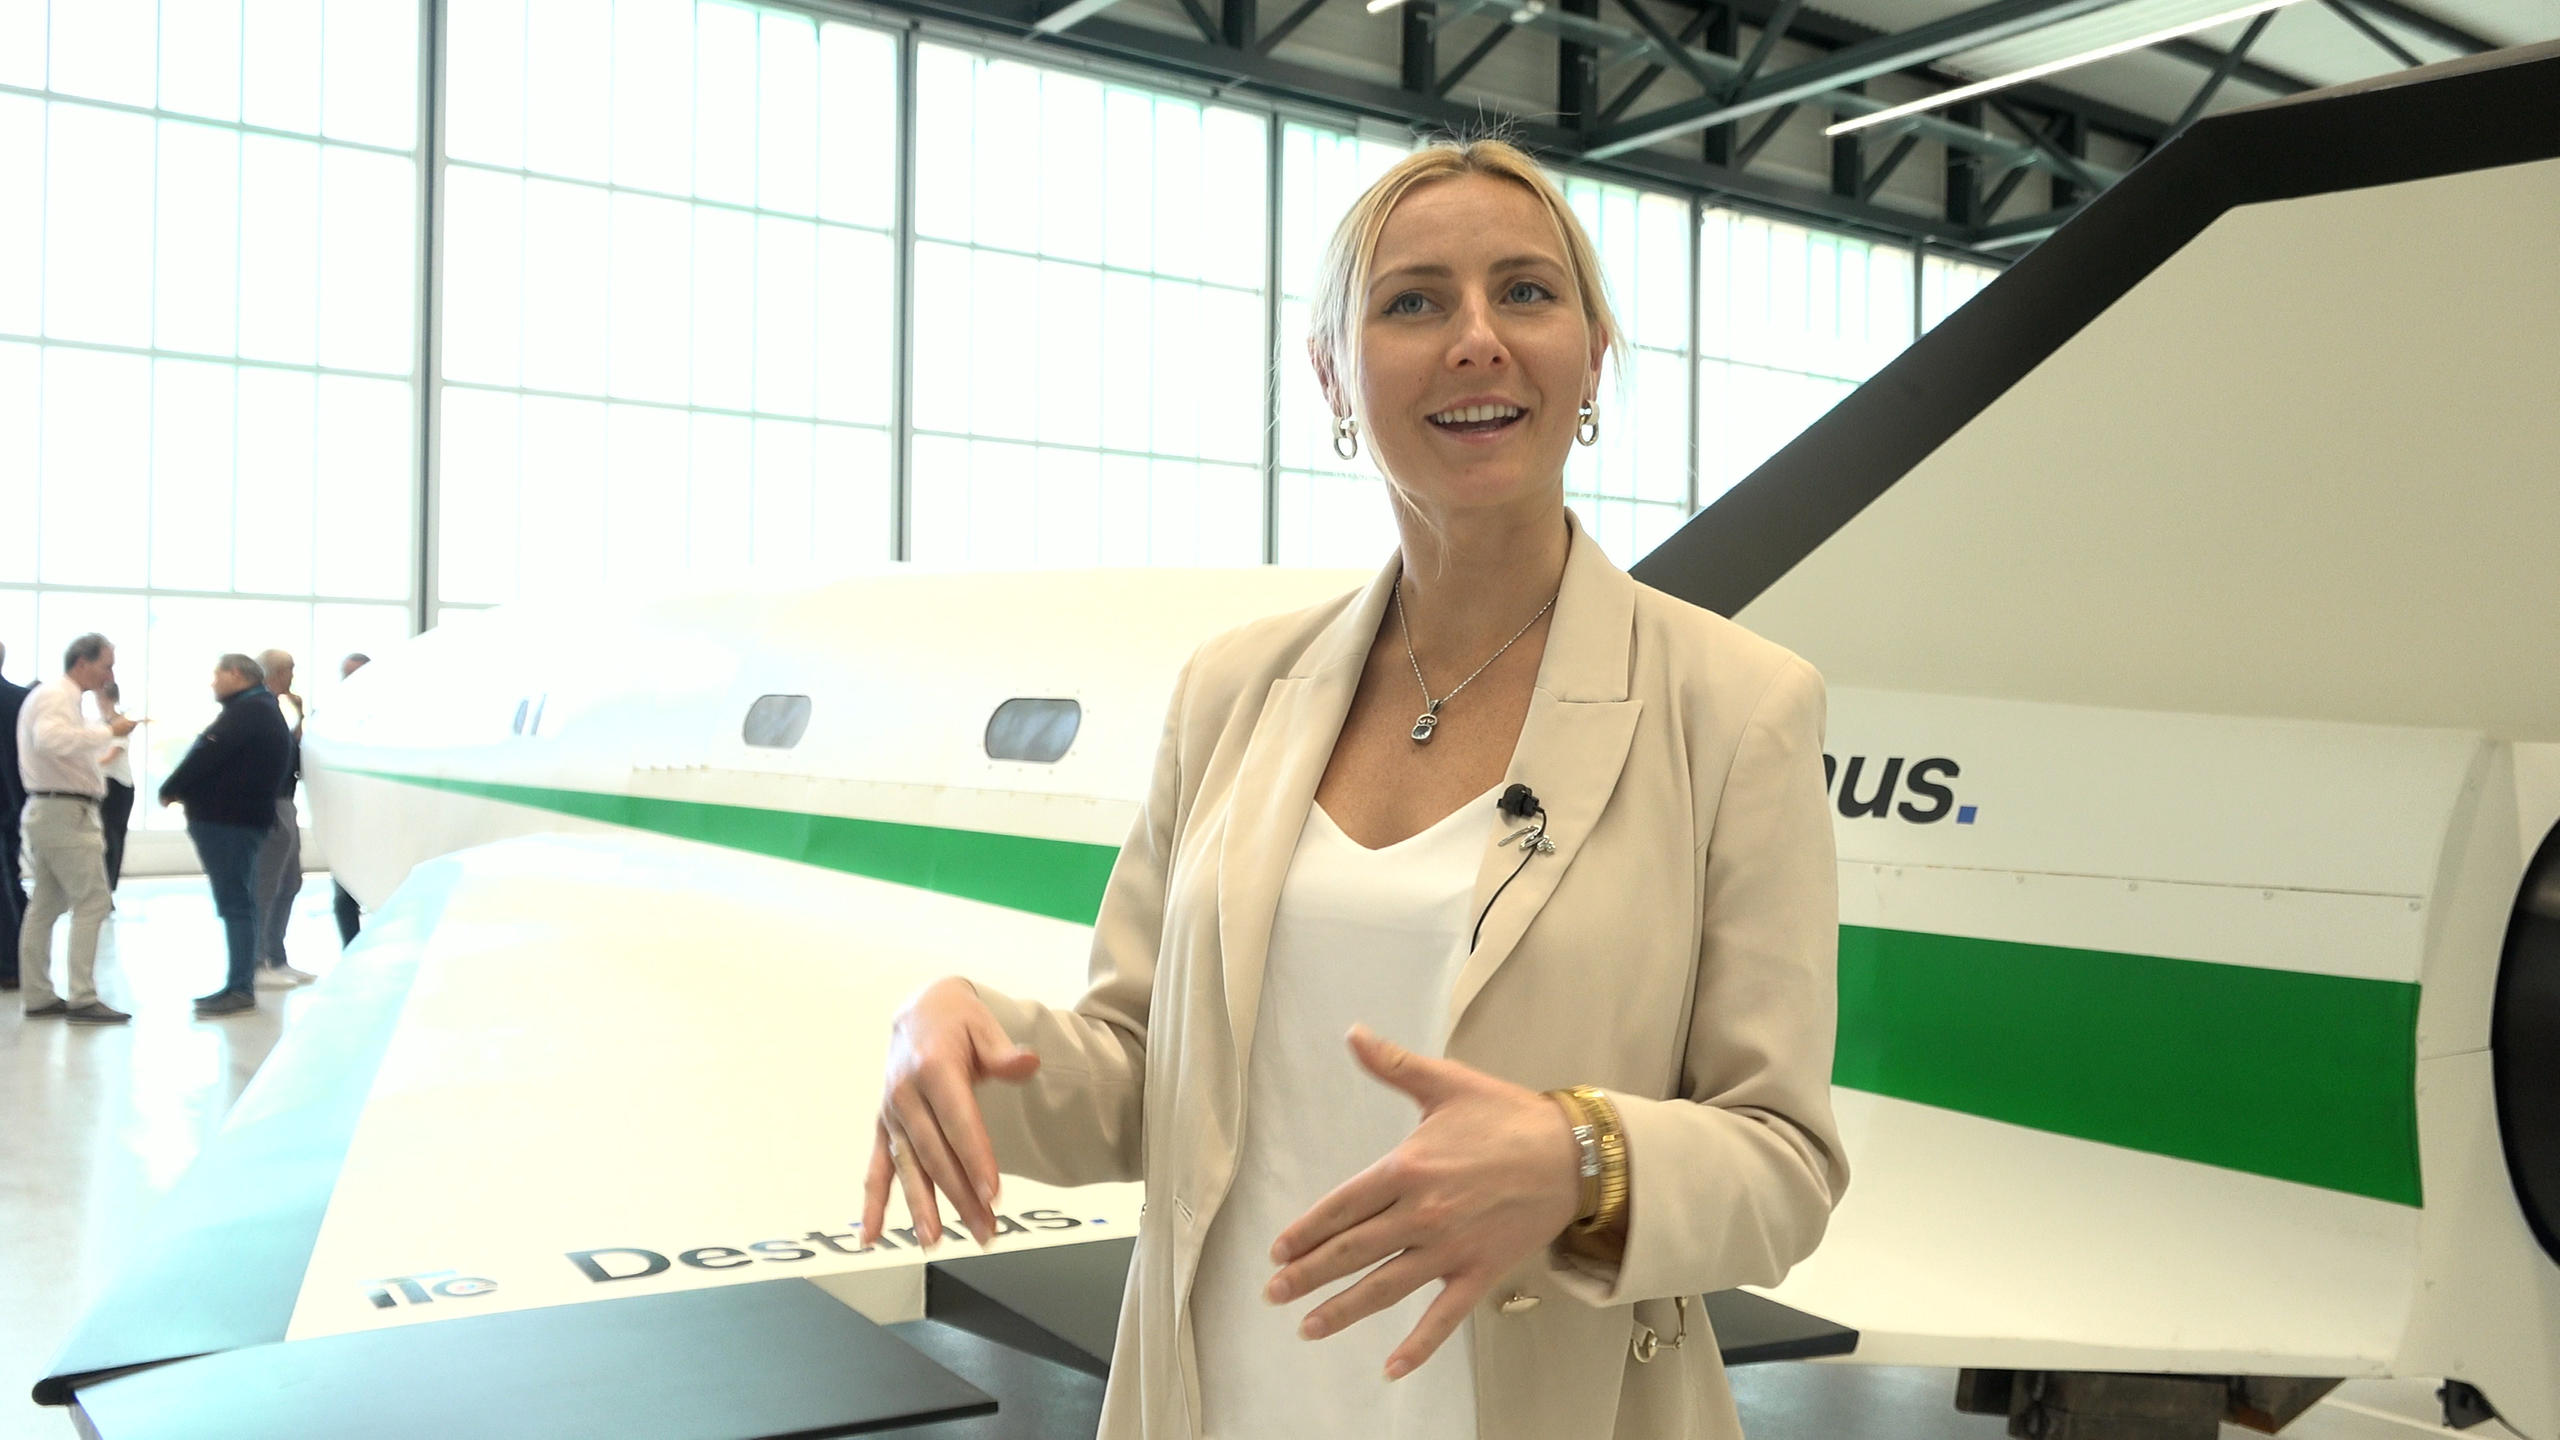 Martina Löfqvist di Destinus davanti al prototipo di aereo supersonico